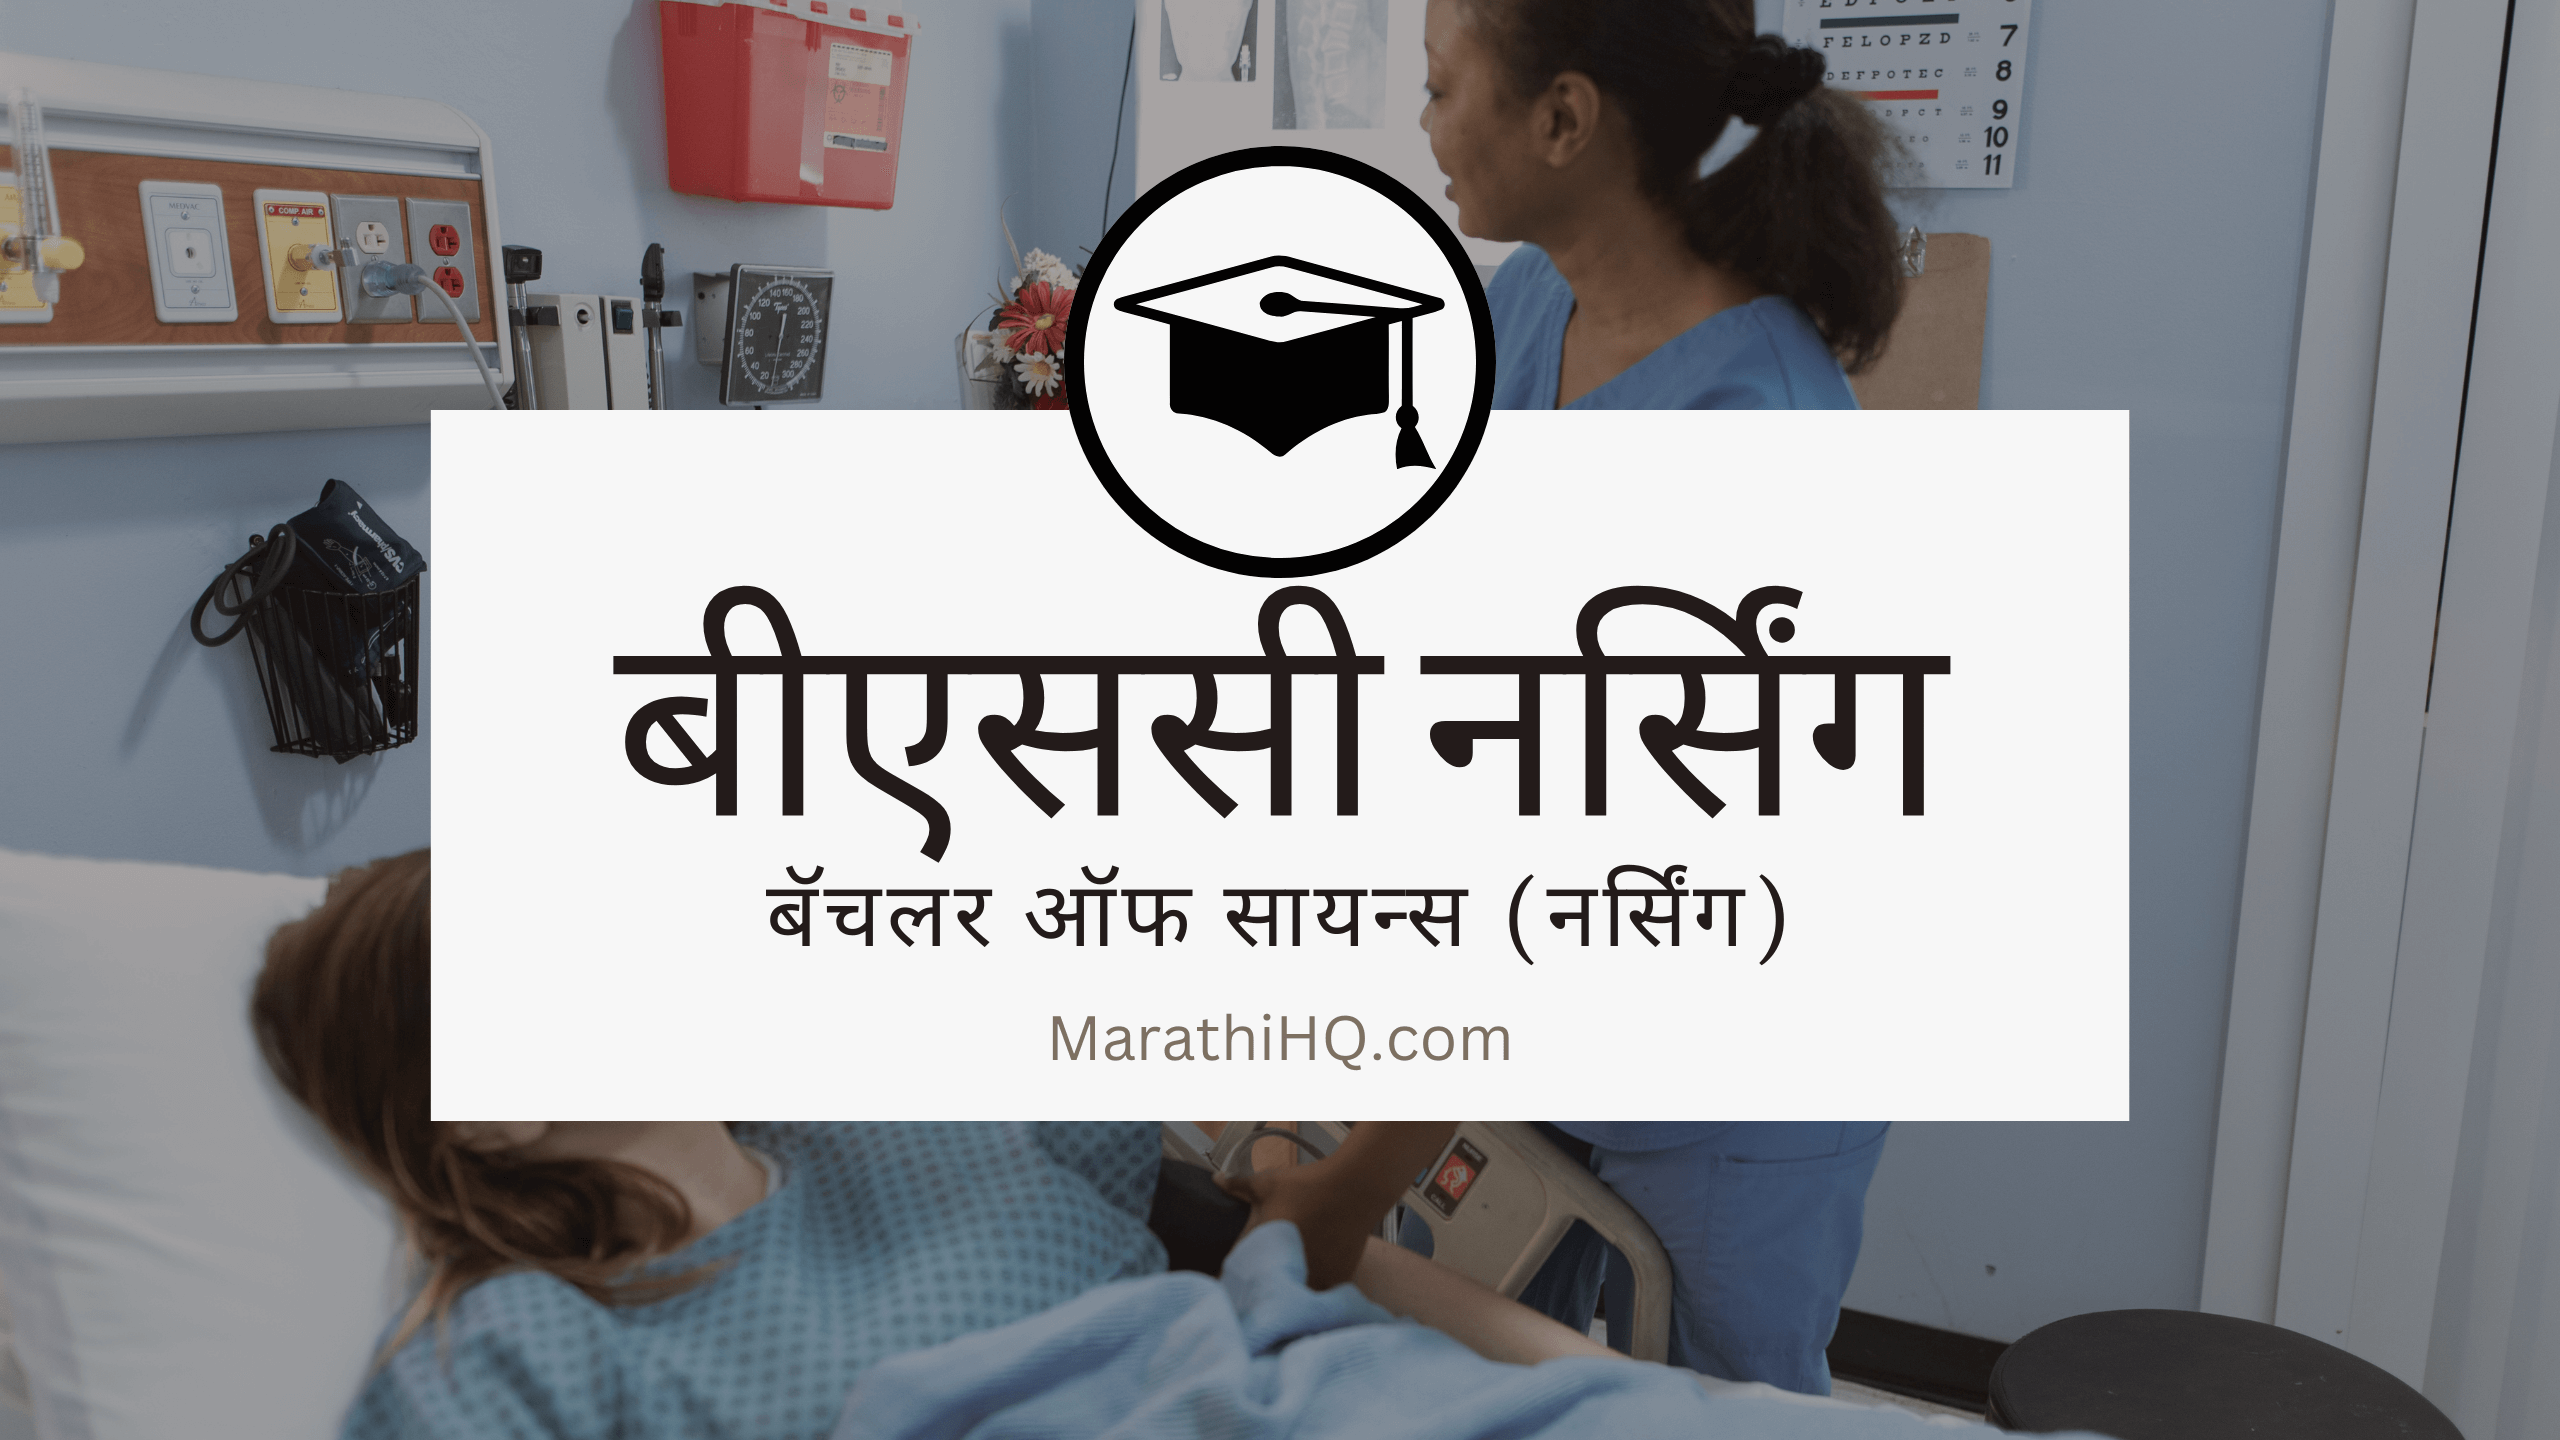 बीएससी नर्सिंग (बेसिक) कोर्स | BSc Nursing Information in Marathi